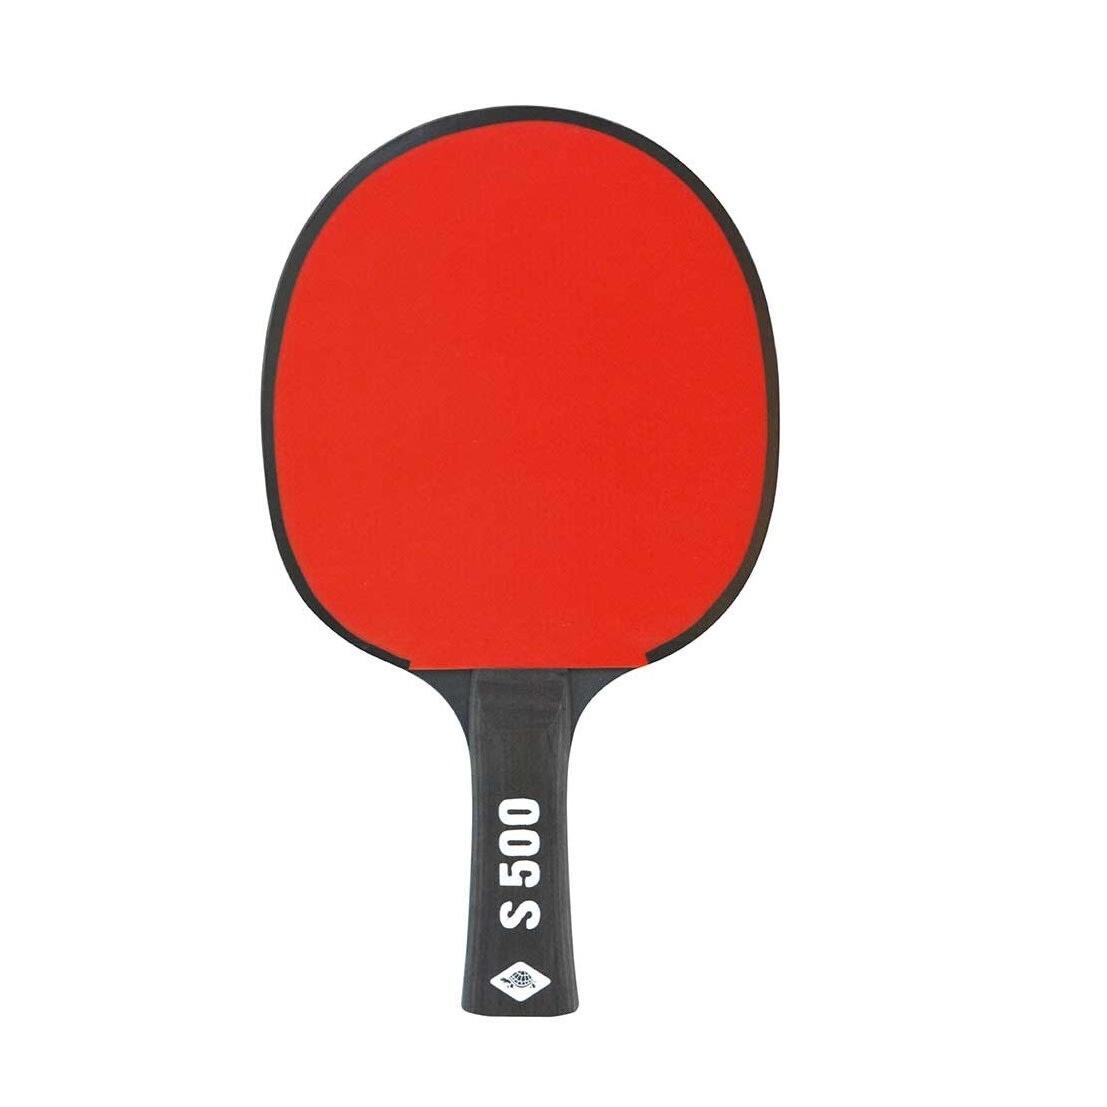 DONIC SCHILDKRÖT Table Tennis Bat (Black/Red)